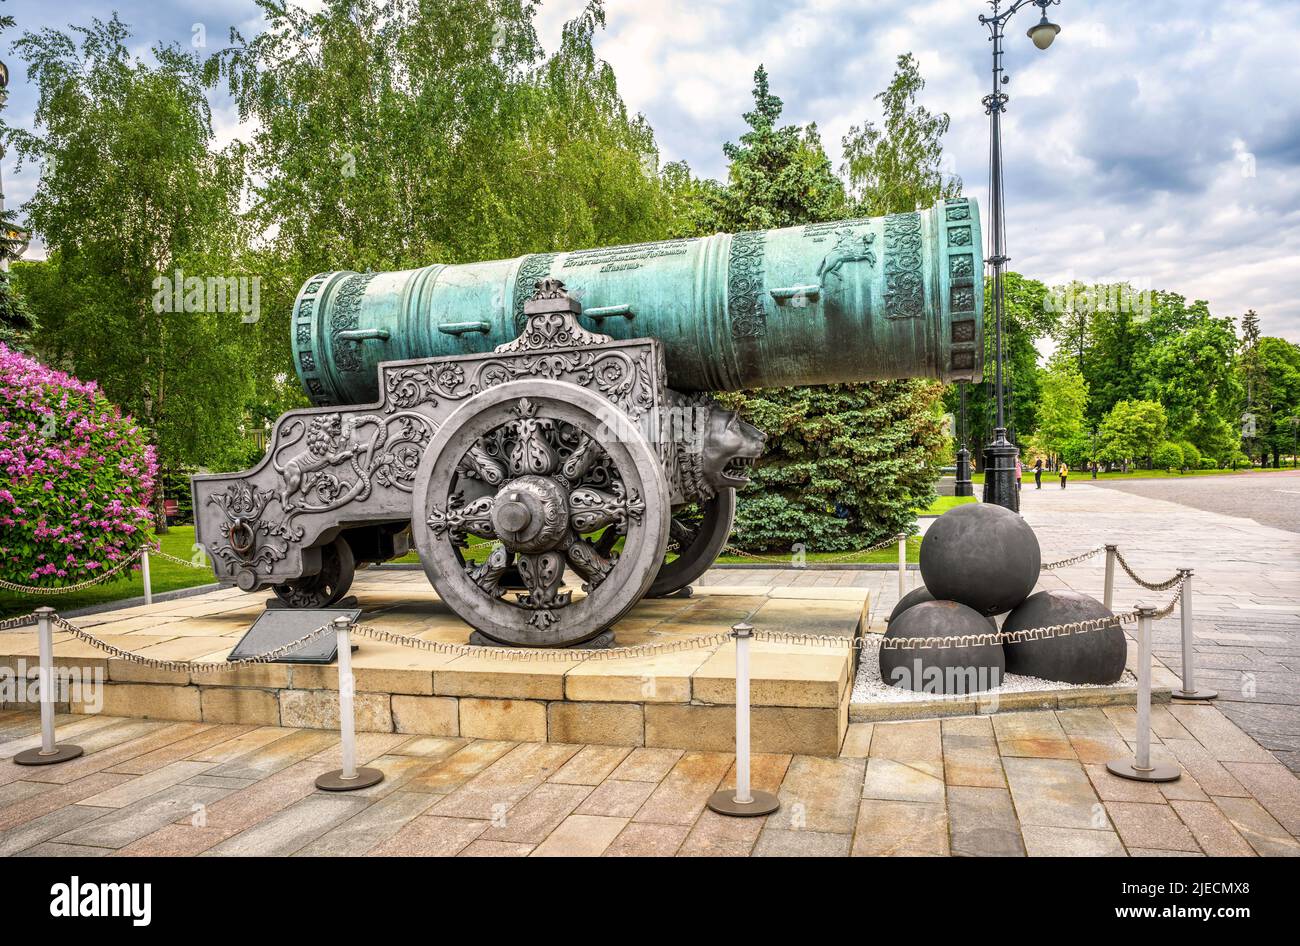 Tsar Cannon (re dei cannoni) nel Cremlino di Mosca, Russia. E' un punto di riferimento storico di Mosca. Grande vecchia pistola di bronzo, Czar Pushka sul russo, a Mosca Foto Stock